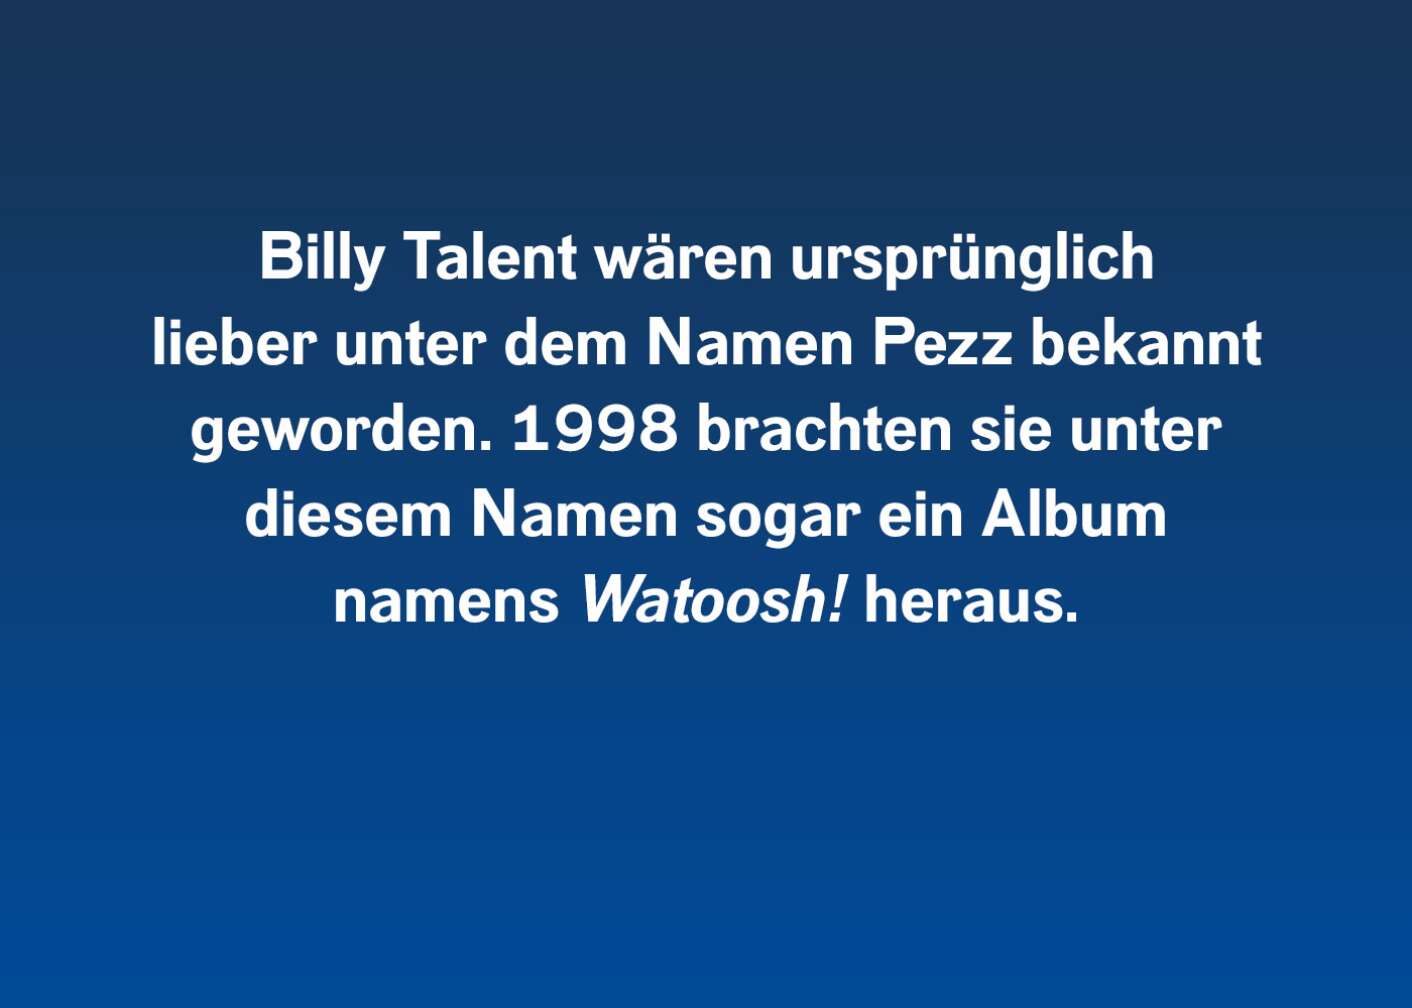 Fakt über Billy Talent als Fließtext